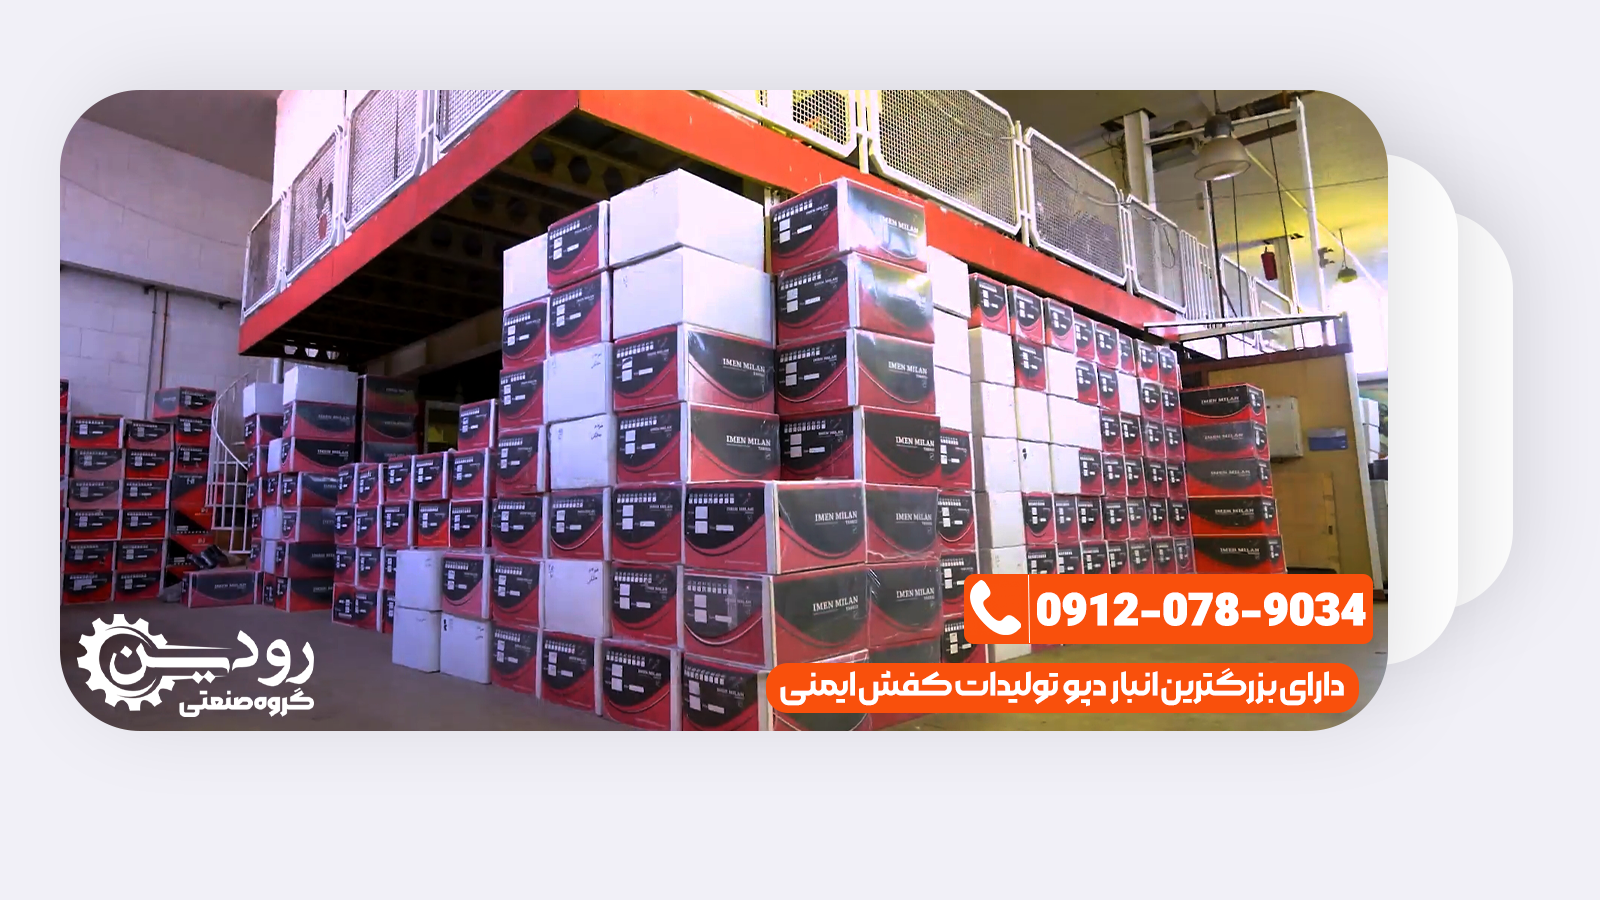 بزرگترین مرکز خرید کفش ایمنی تهران سایتی را فراهم کرده تا به صورت مستقیم با مشتریان در ارتباط باشد.